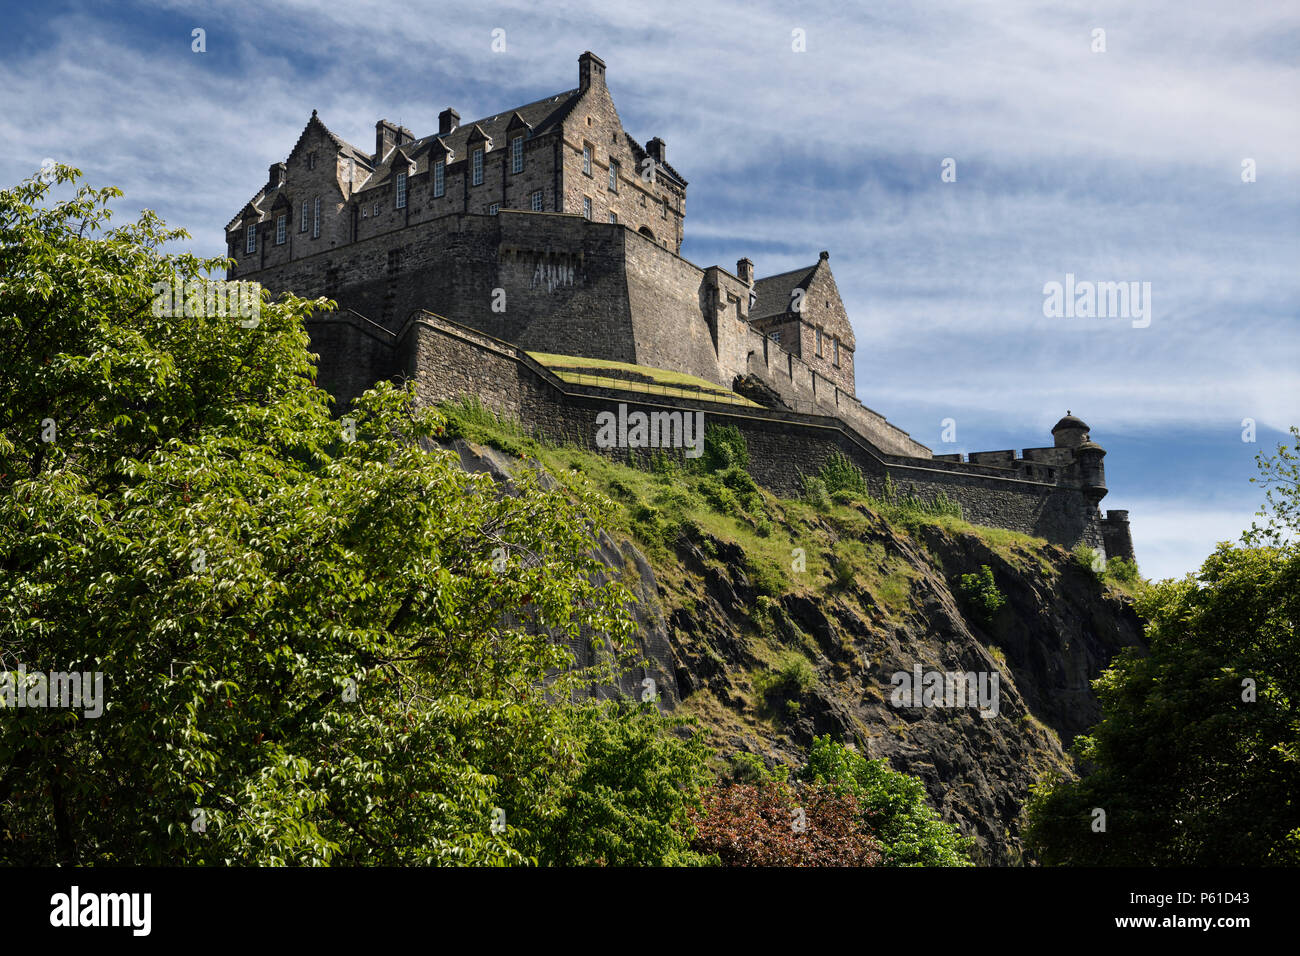 Museo Nazionale della Guerra del Castello di Edimburgo fortezza sul tappo vulcanica di roccia del Castello di Edimburgo capitale della Scozia Regno Unito Foto Stock